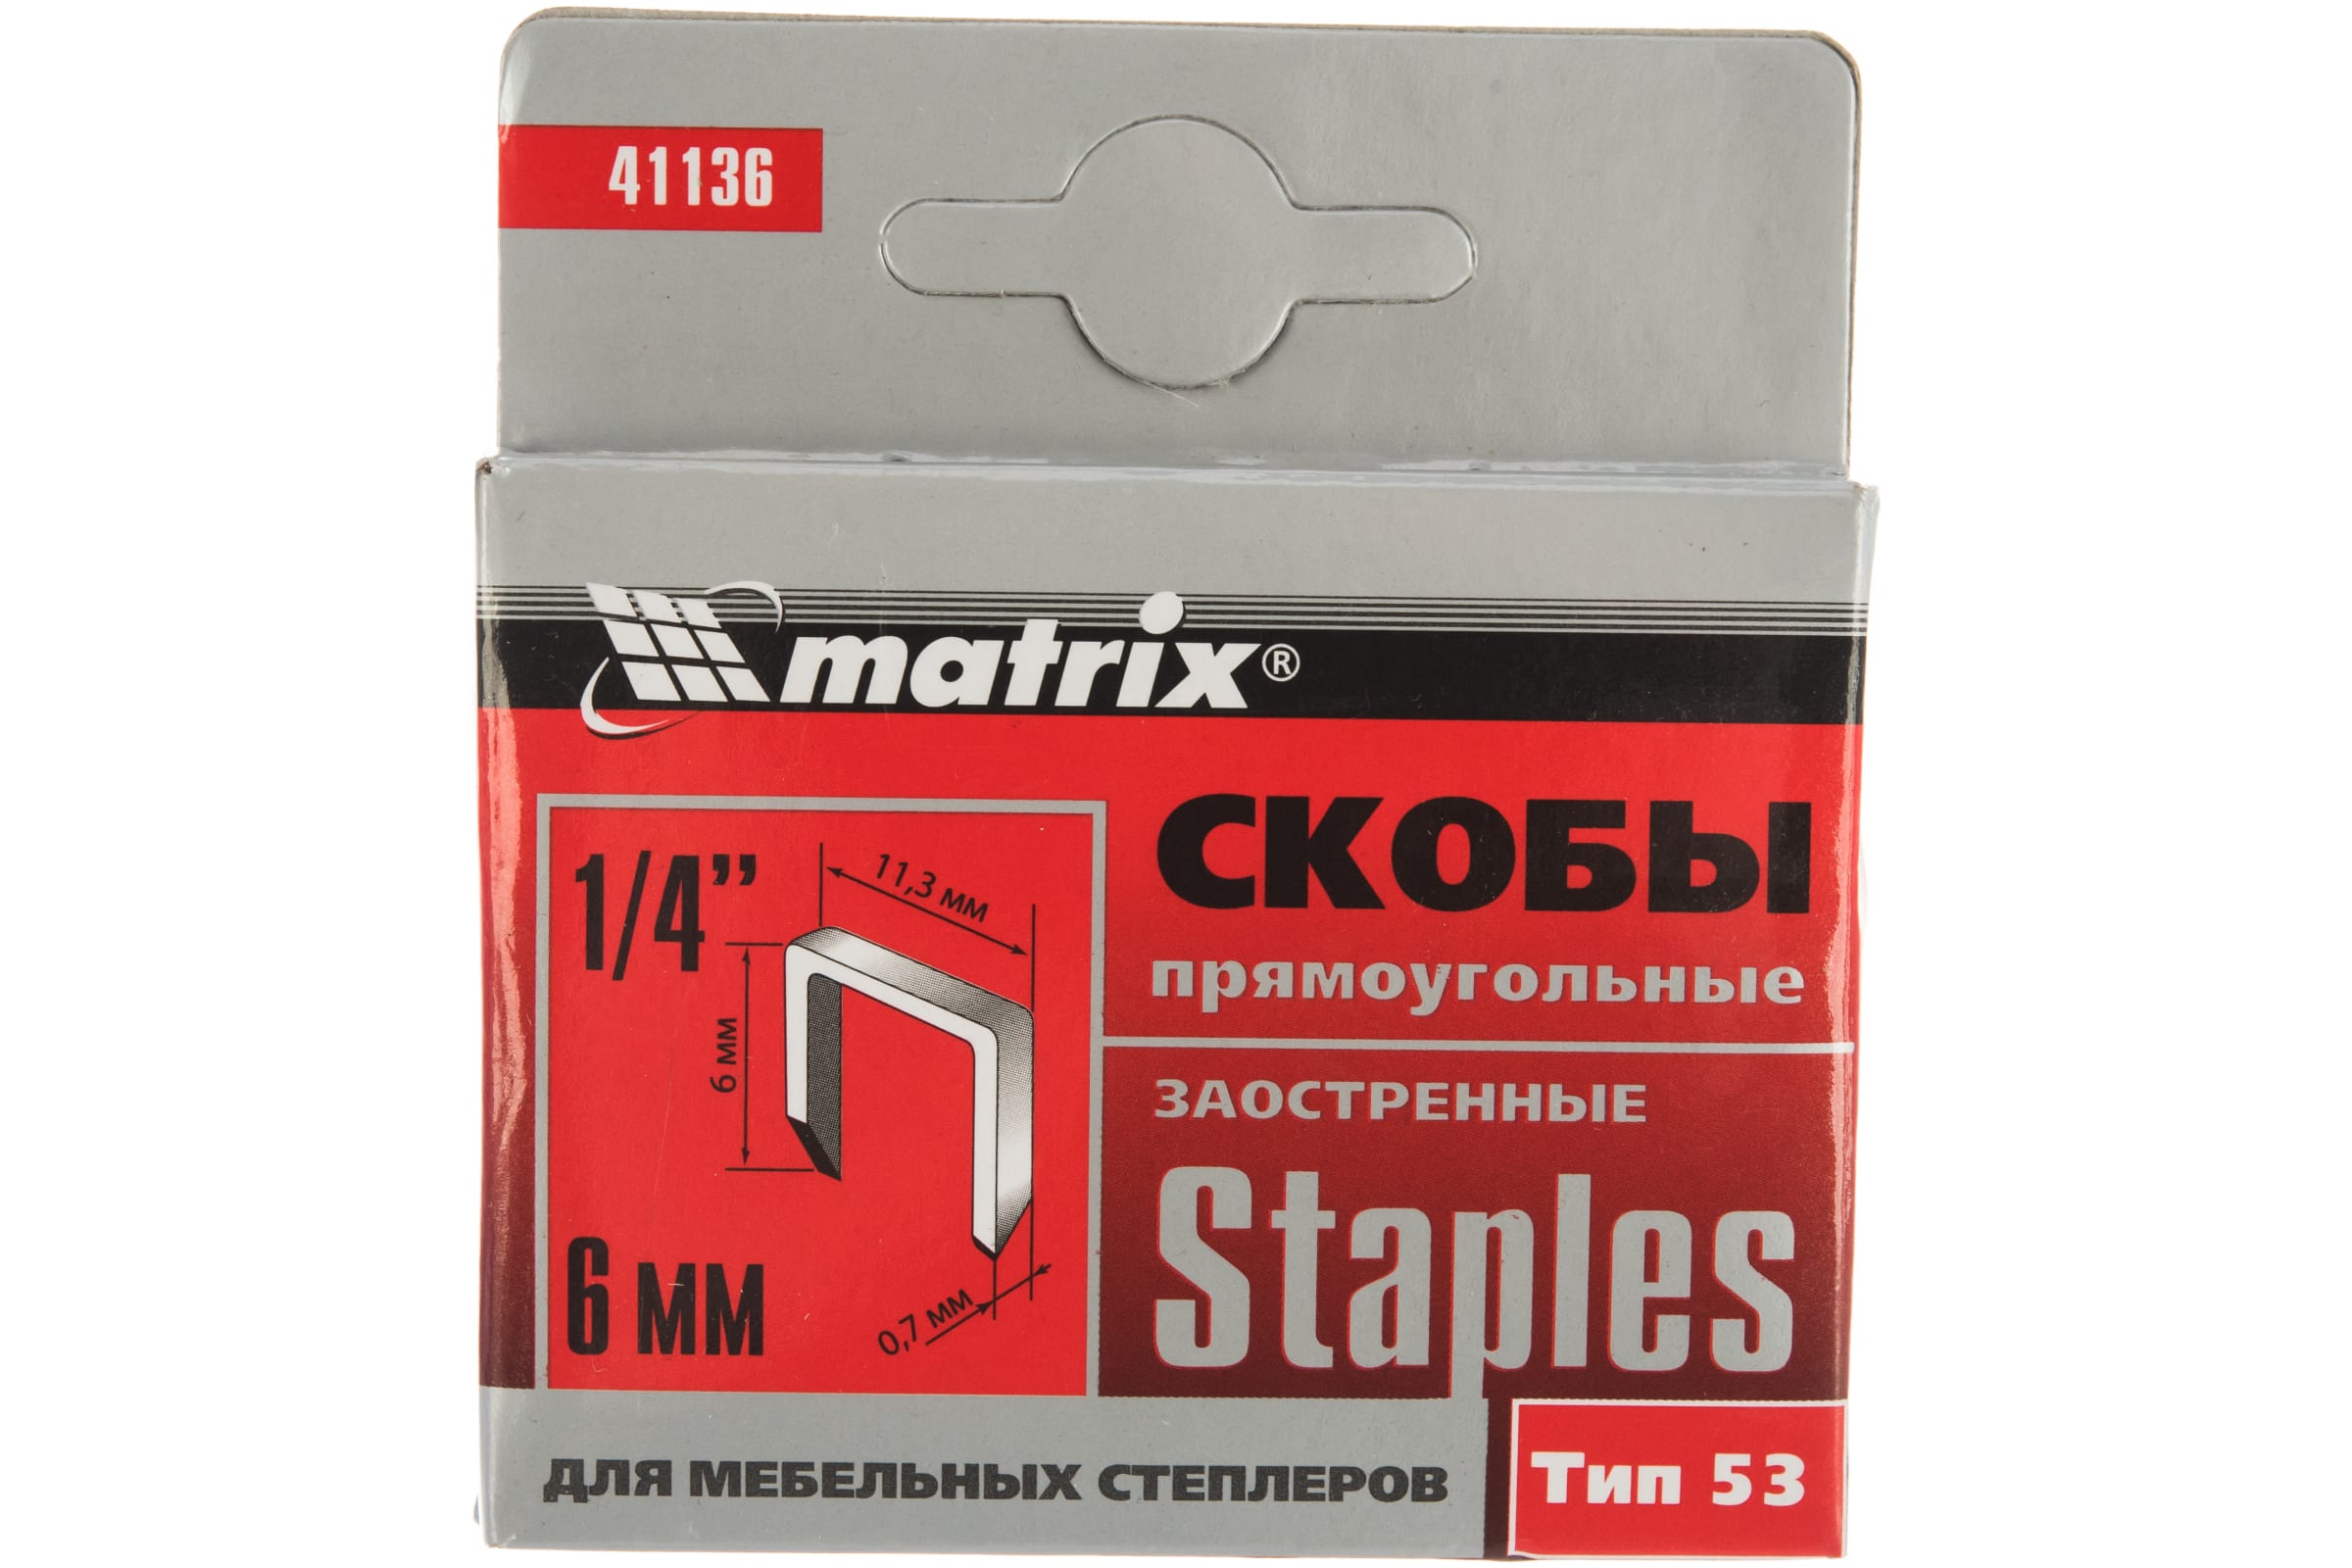 Скобы для электростеплера MATRIX 41136 закаленные скобы для степлеров matrix